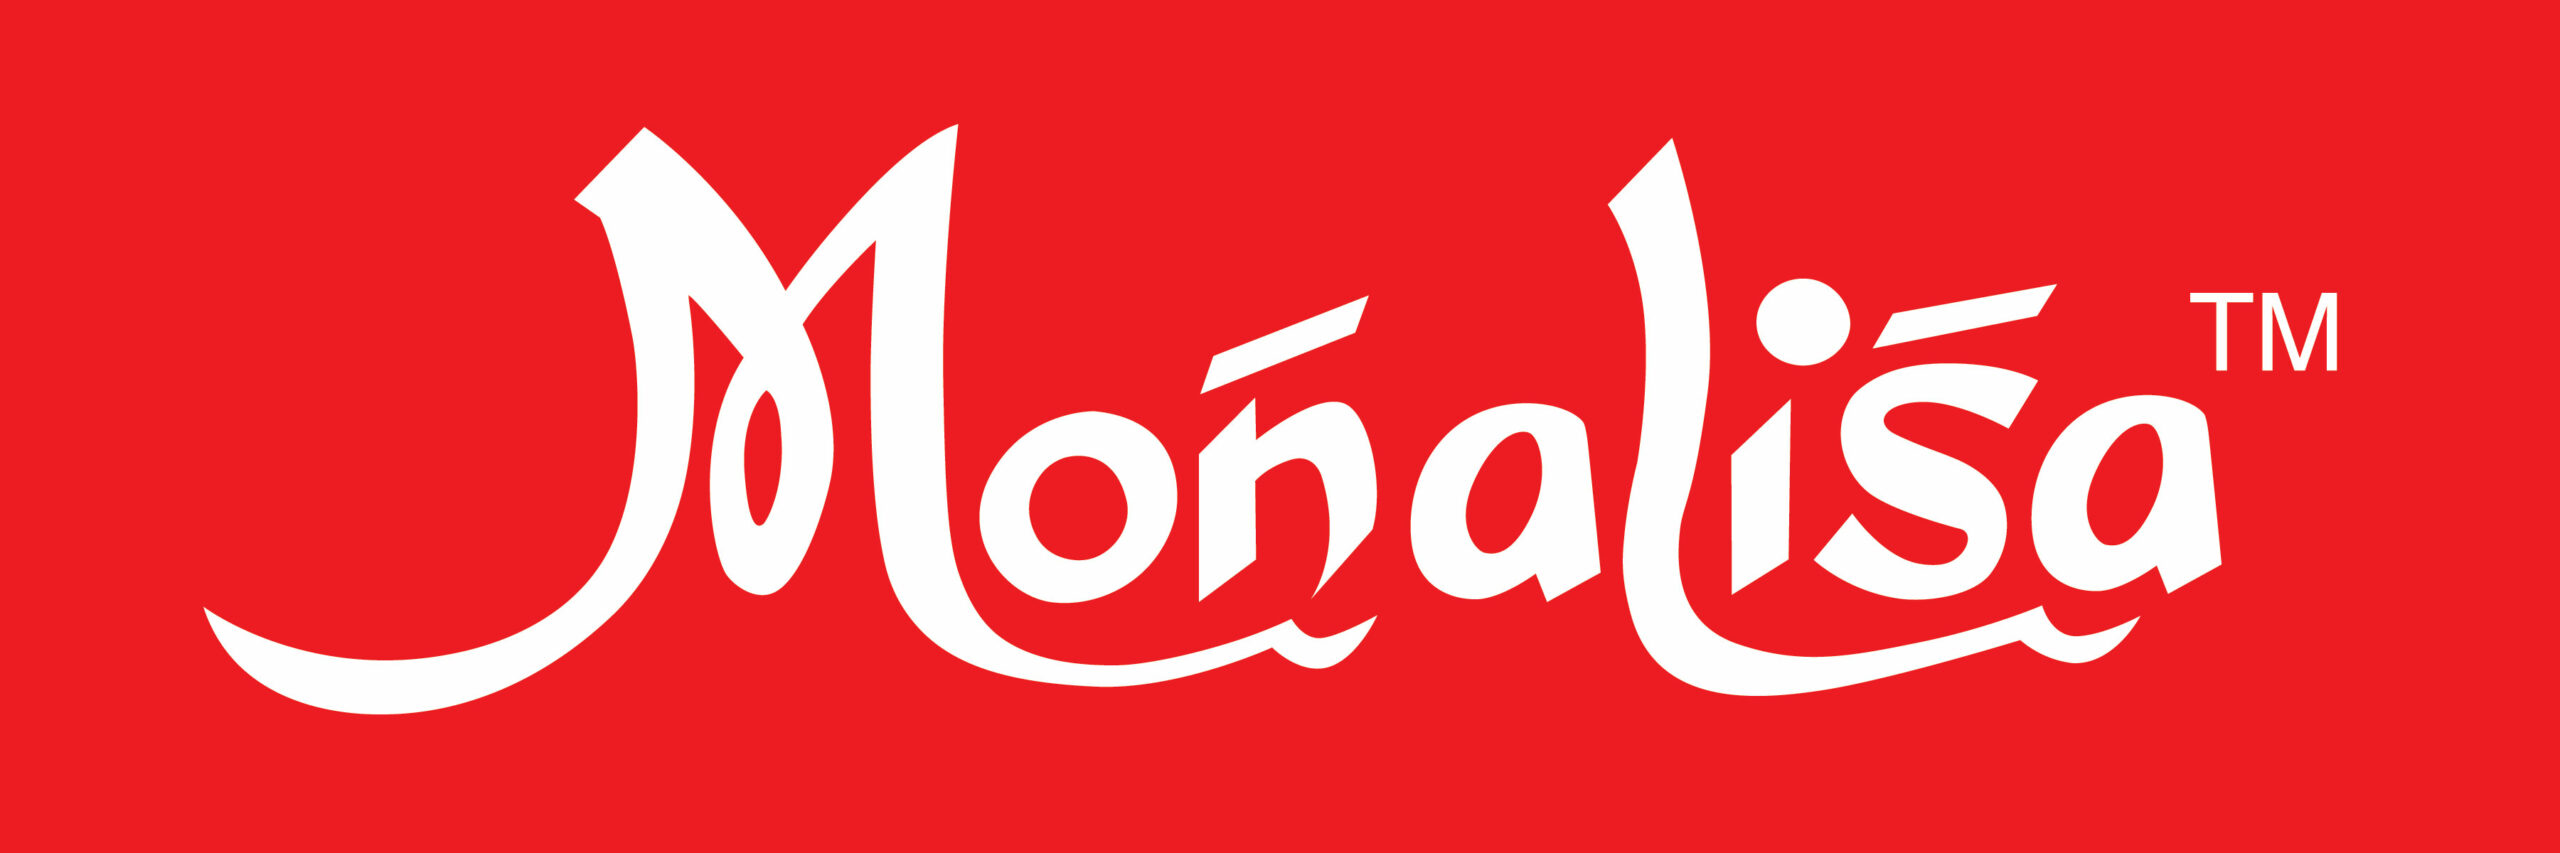 Monalisa-Logo-01-scaled